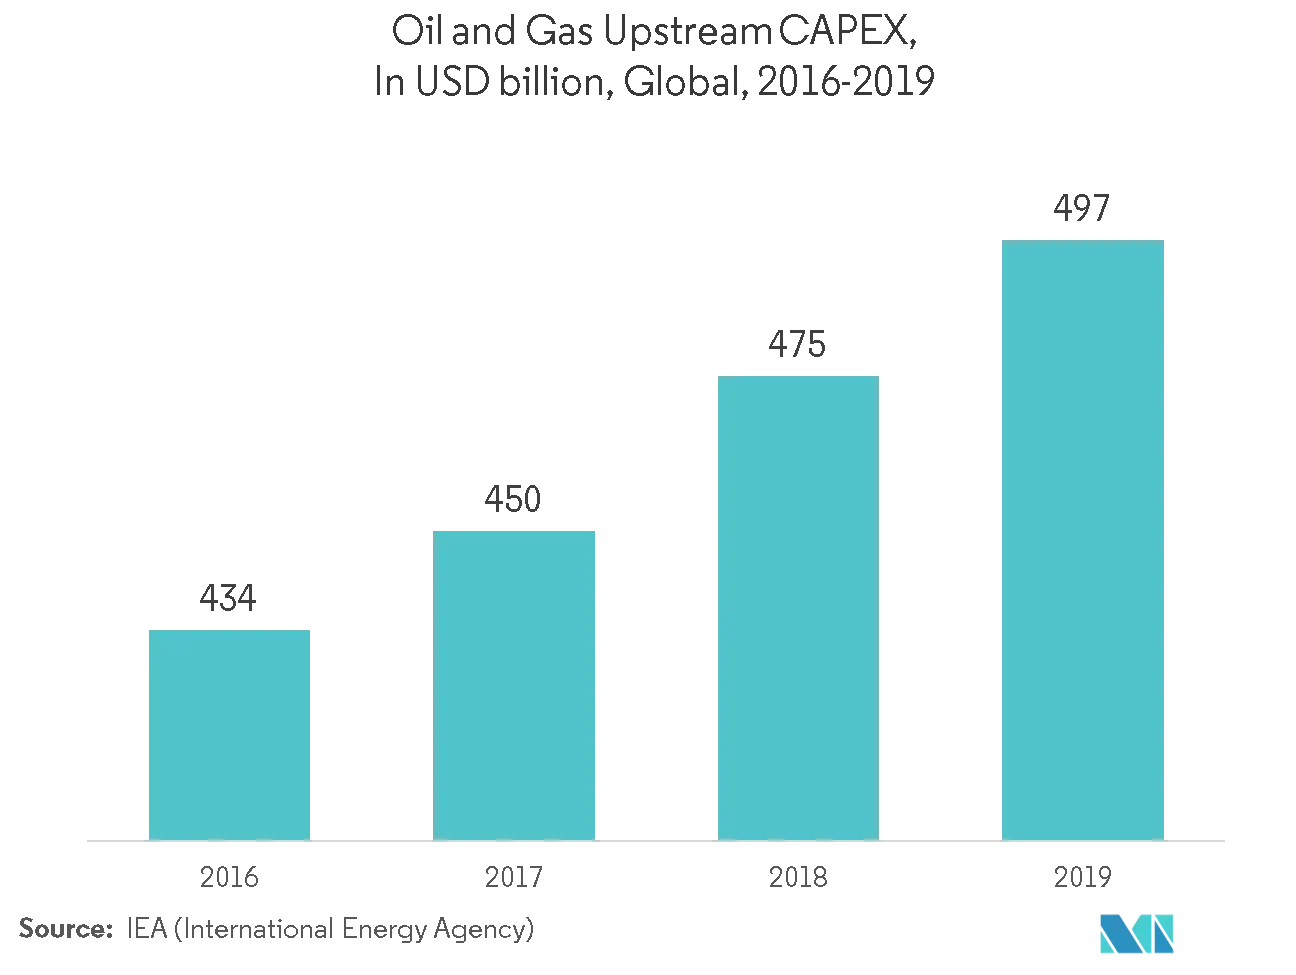 Рынок электронных домов капитальные затраты на добычу нефти и газа, млрд долларов США, глобальный, 2016-2019 гг.